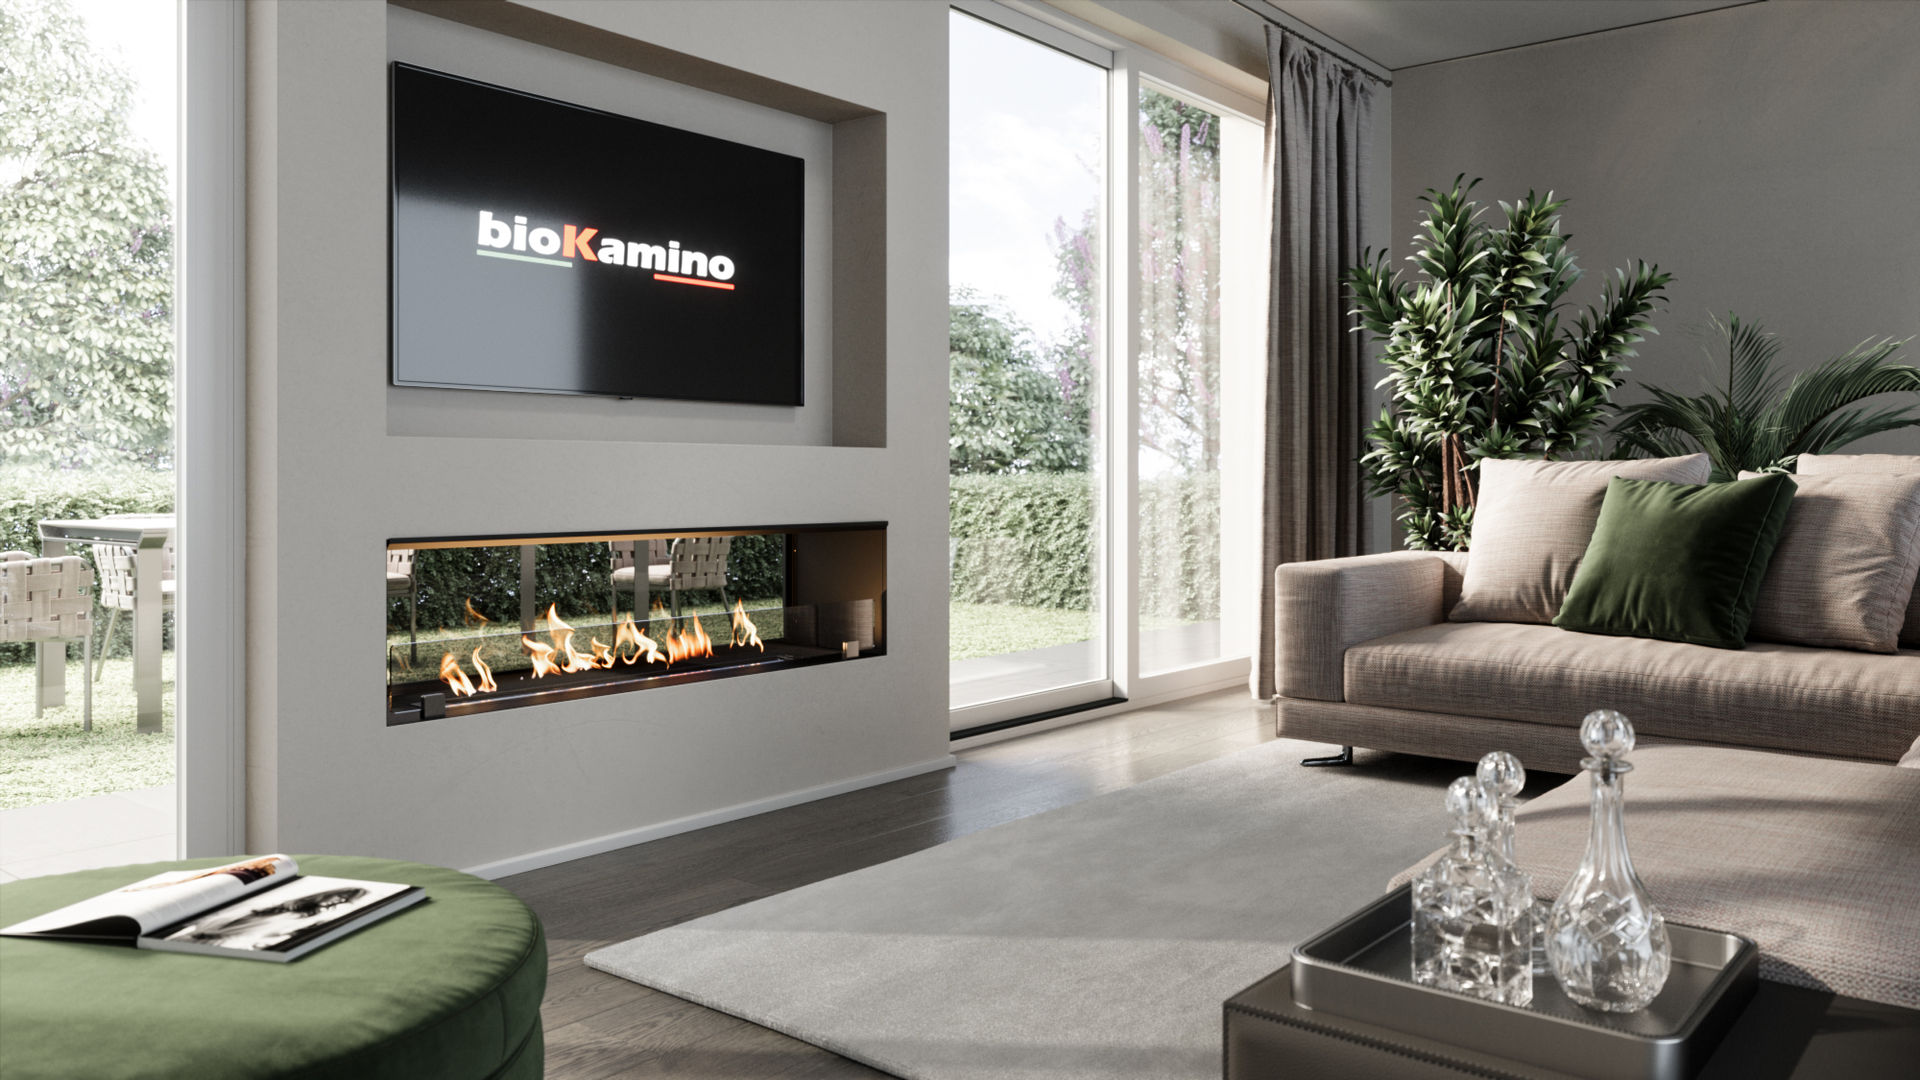 BKBF - LINEA DA INCASSO, bioKamino bioKamino Maisons modernes Fer / Acier Accessoires & décoration